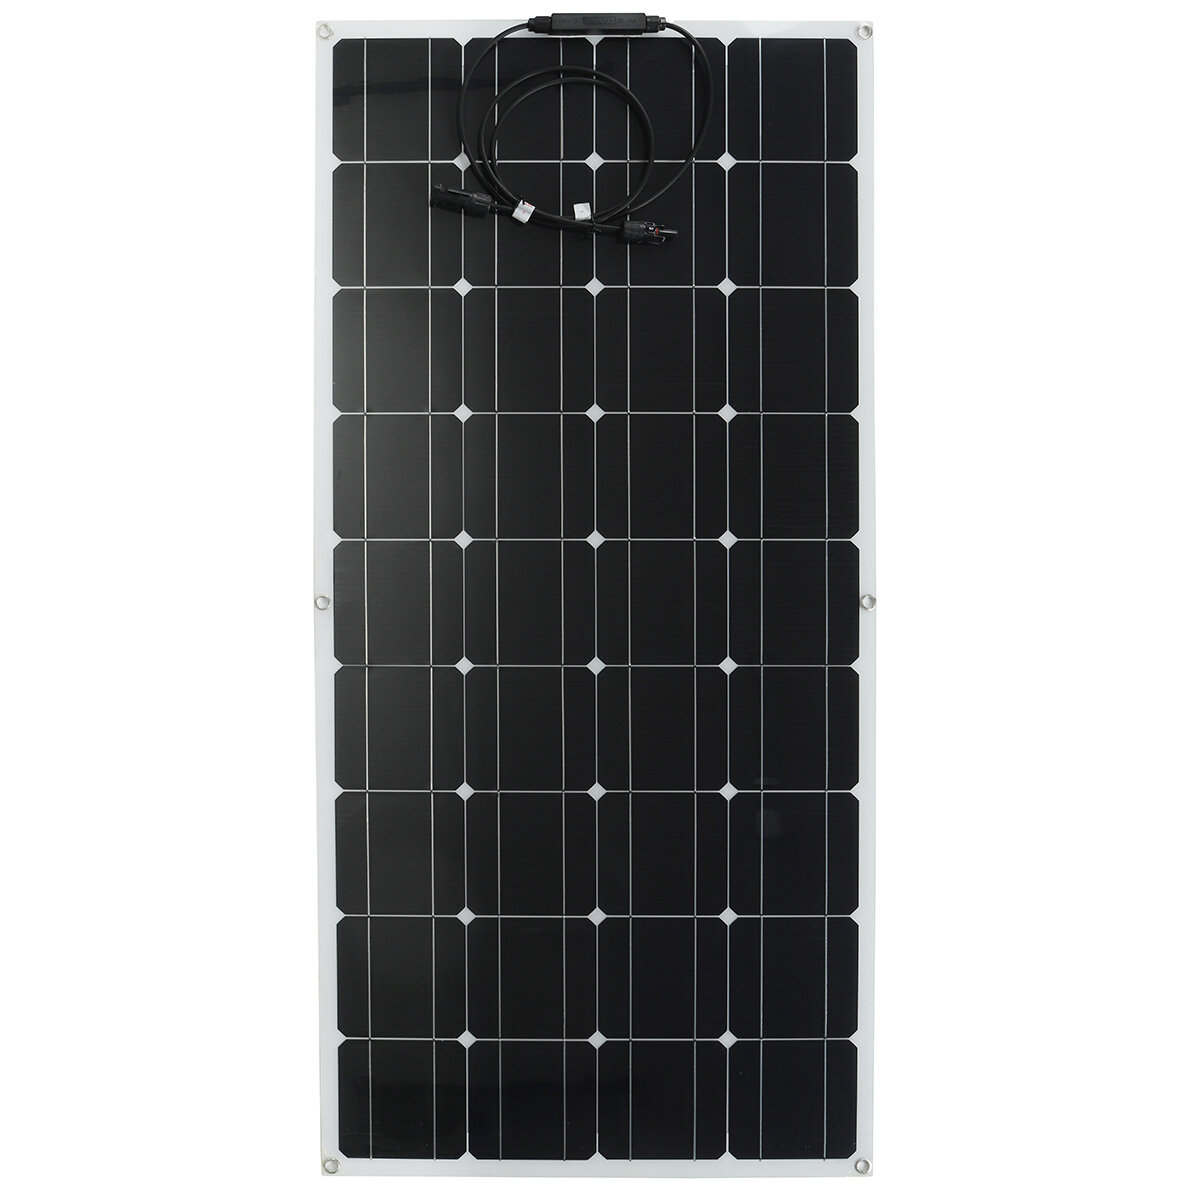 120W Solar Panel 12V Solar Power Bank Dispositivos eléctricos portátiles cámping Van Travel Home